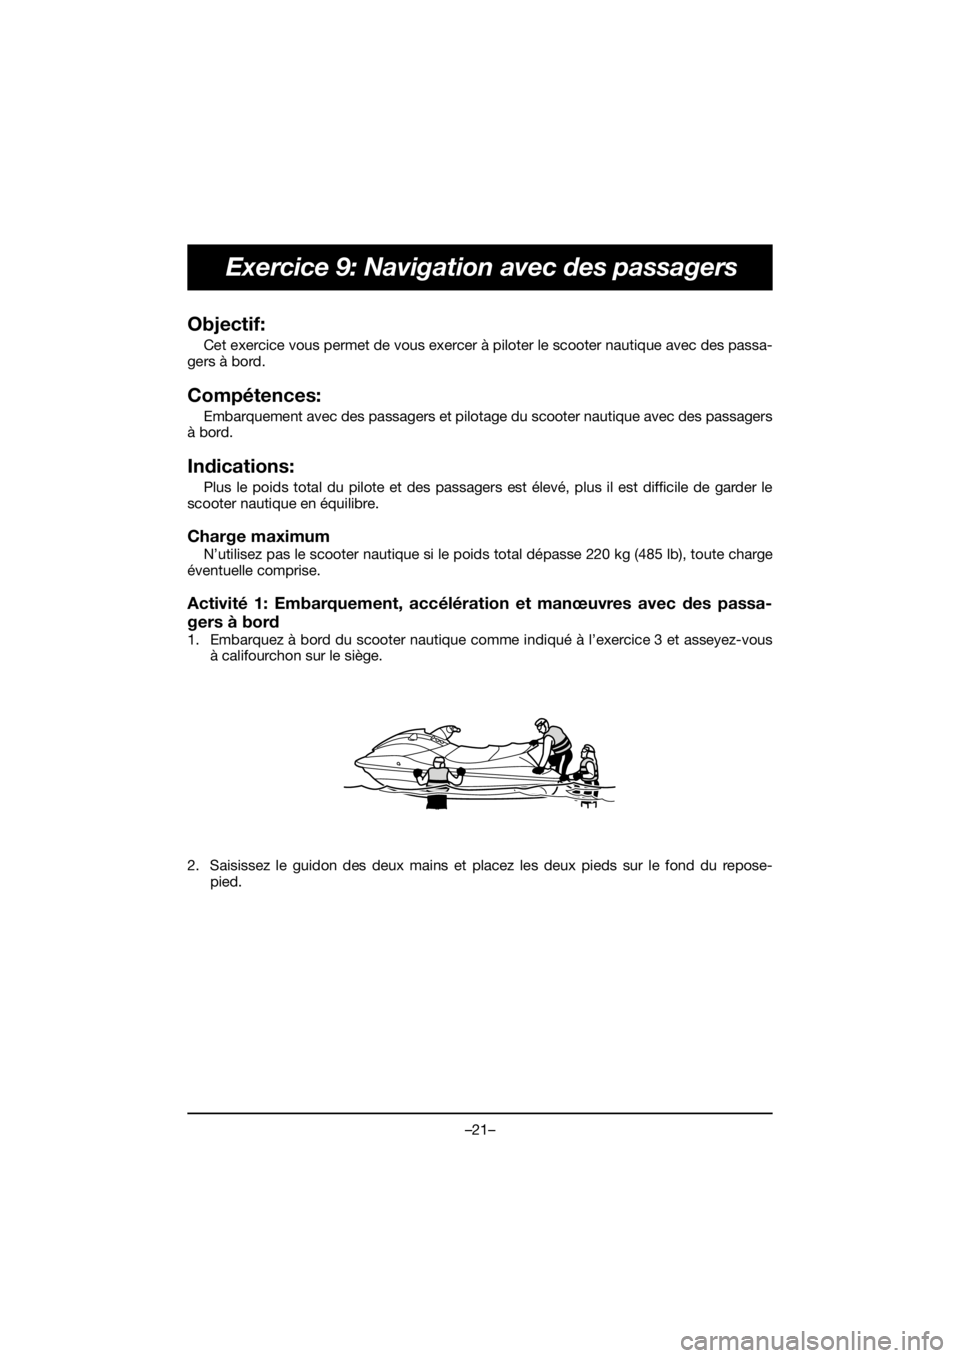 YAMAHA EXR 2020 Service Manual –21–
Exercice 9: Navigation avec des passagers
Objectif: 
Cet exercice vous permet de vous exercer à piloter le scooter nautique avec des passa-
gers à bord.
Compétences: 
Embarquement avec des